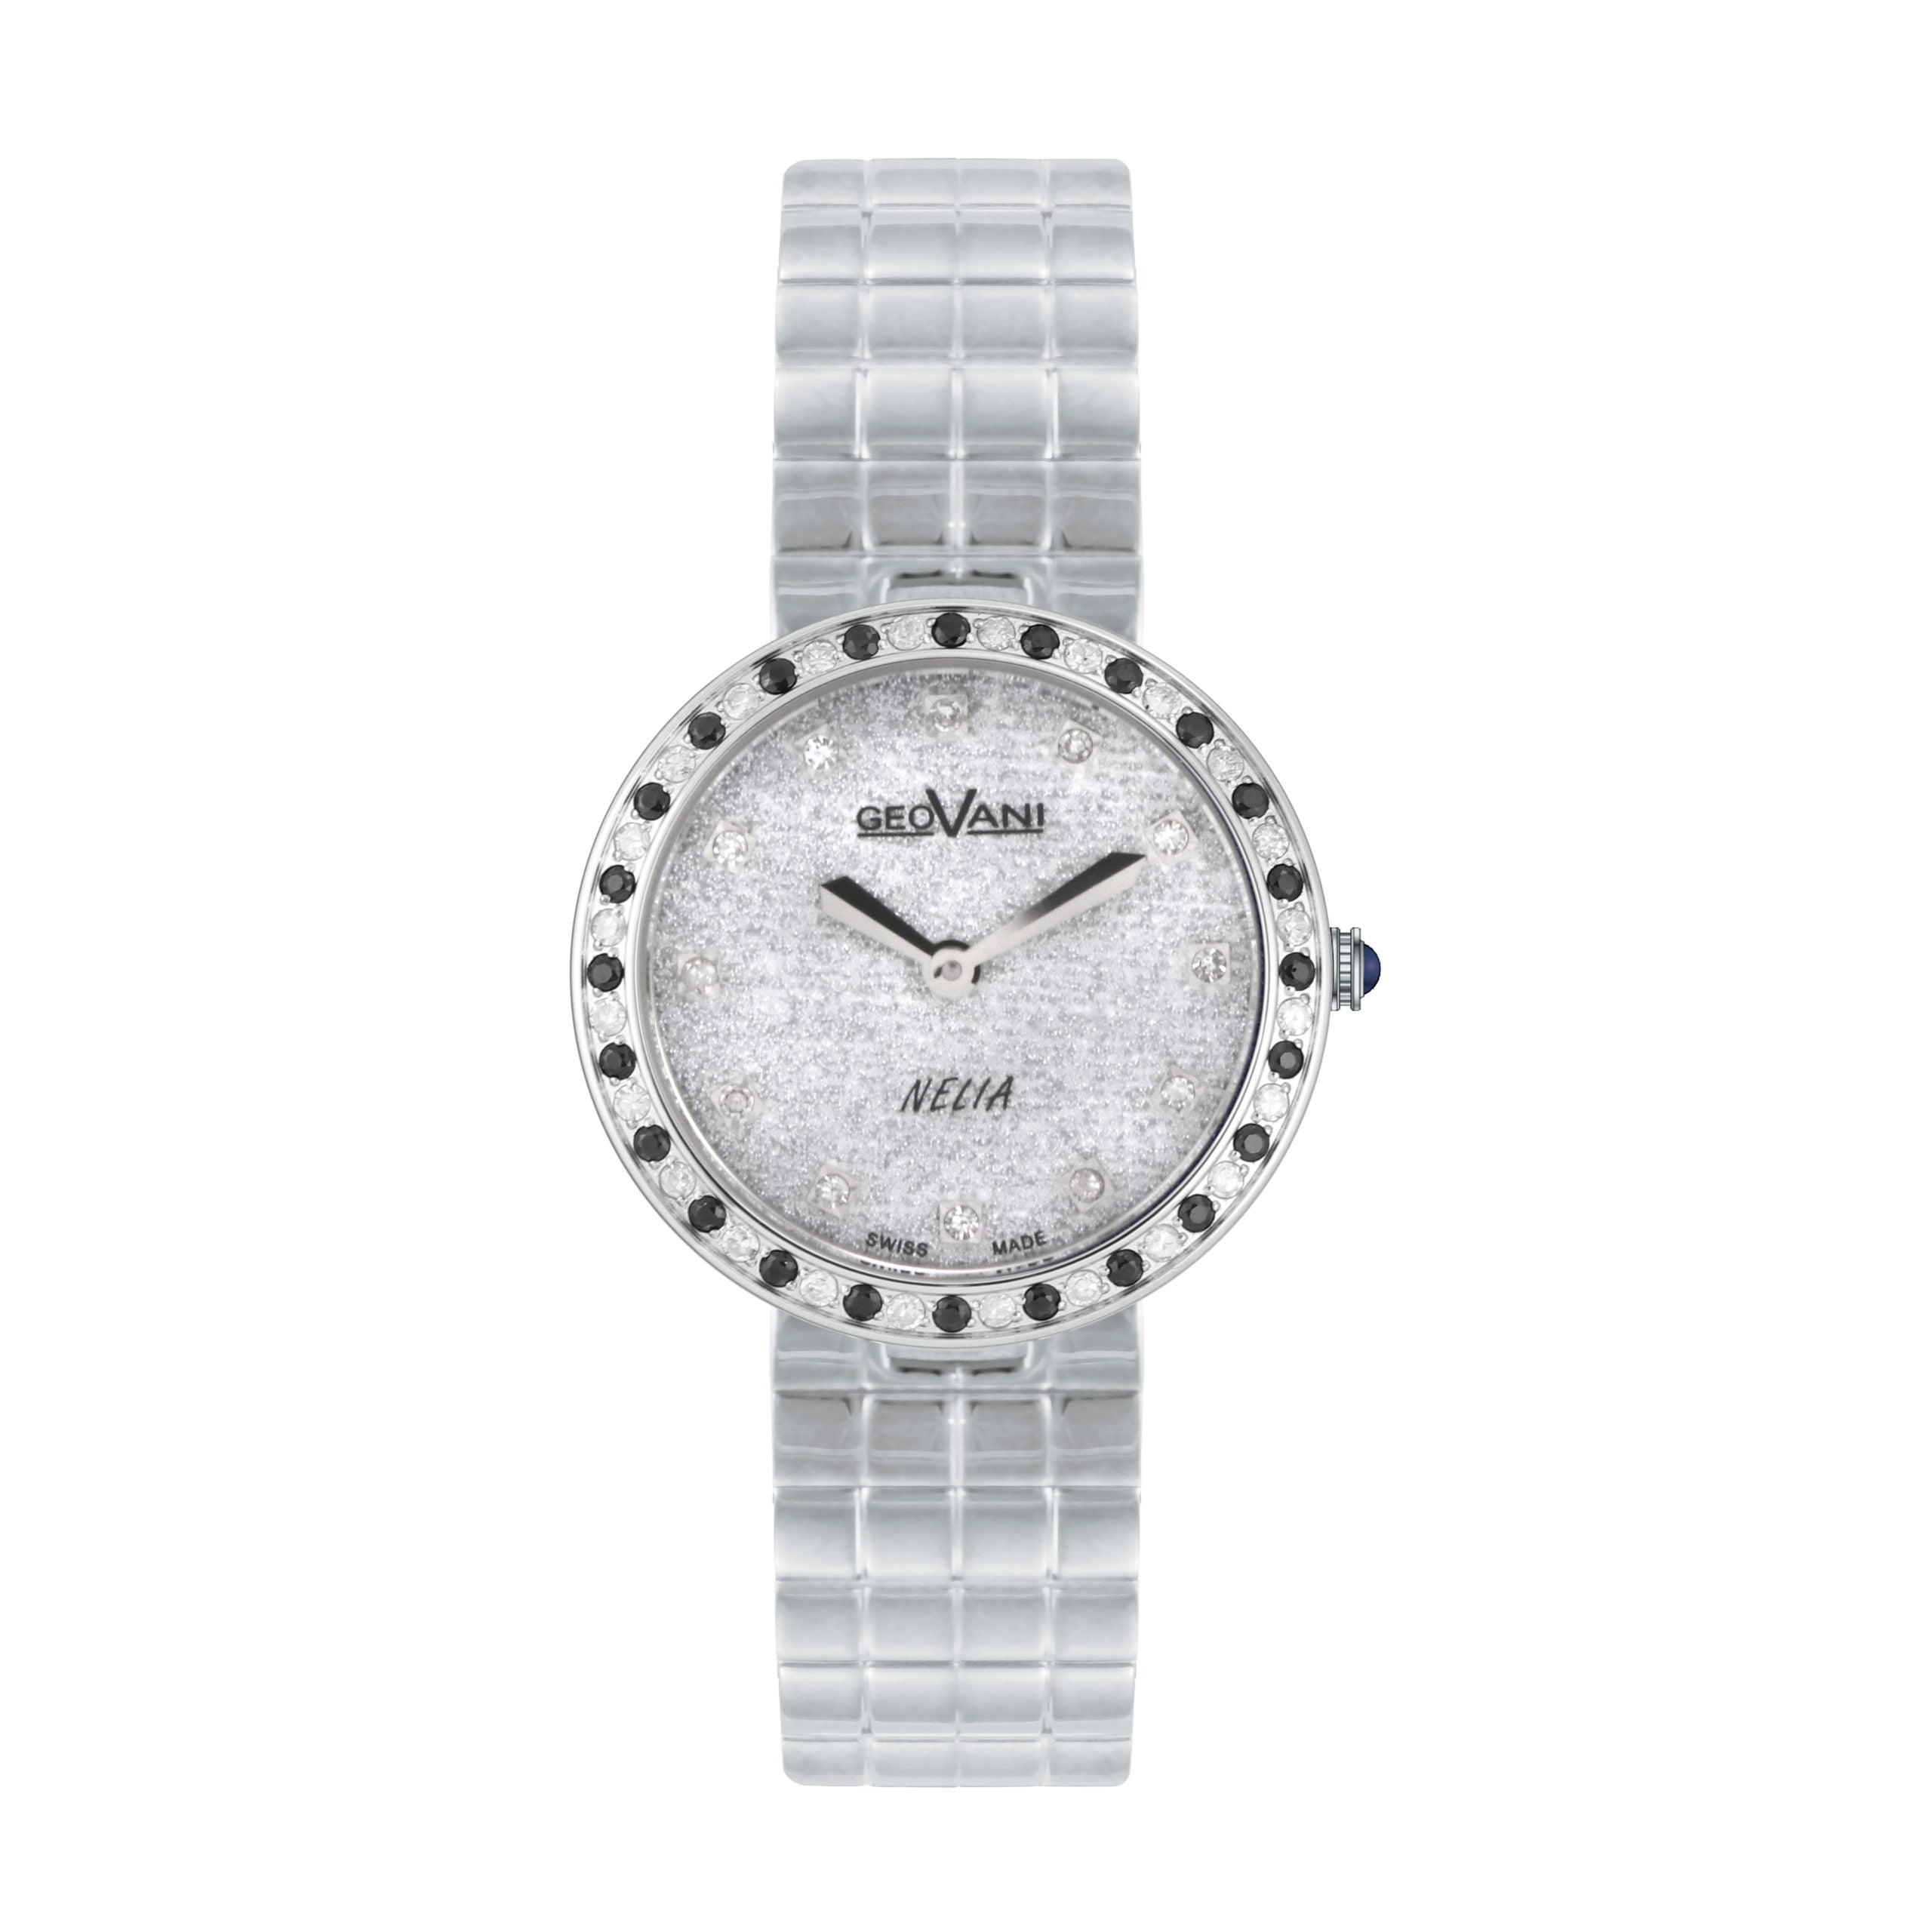 Giovanni Women's Swiss Quartz Watch with Shiny Silver Dial - GEO-0023